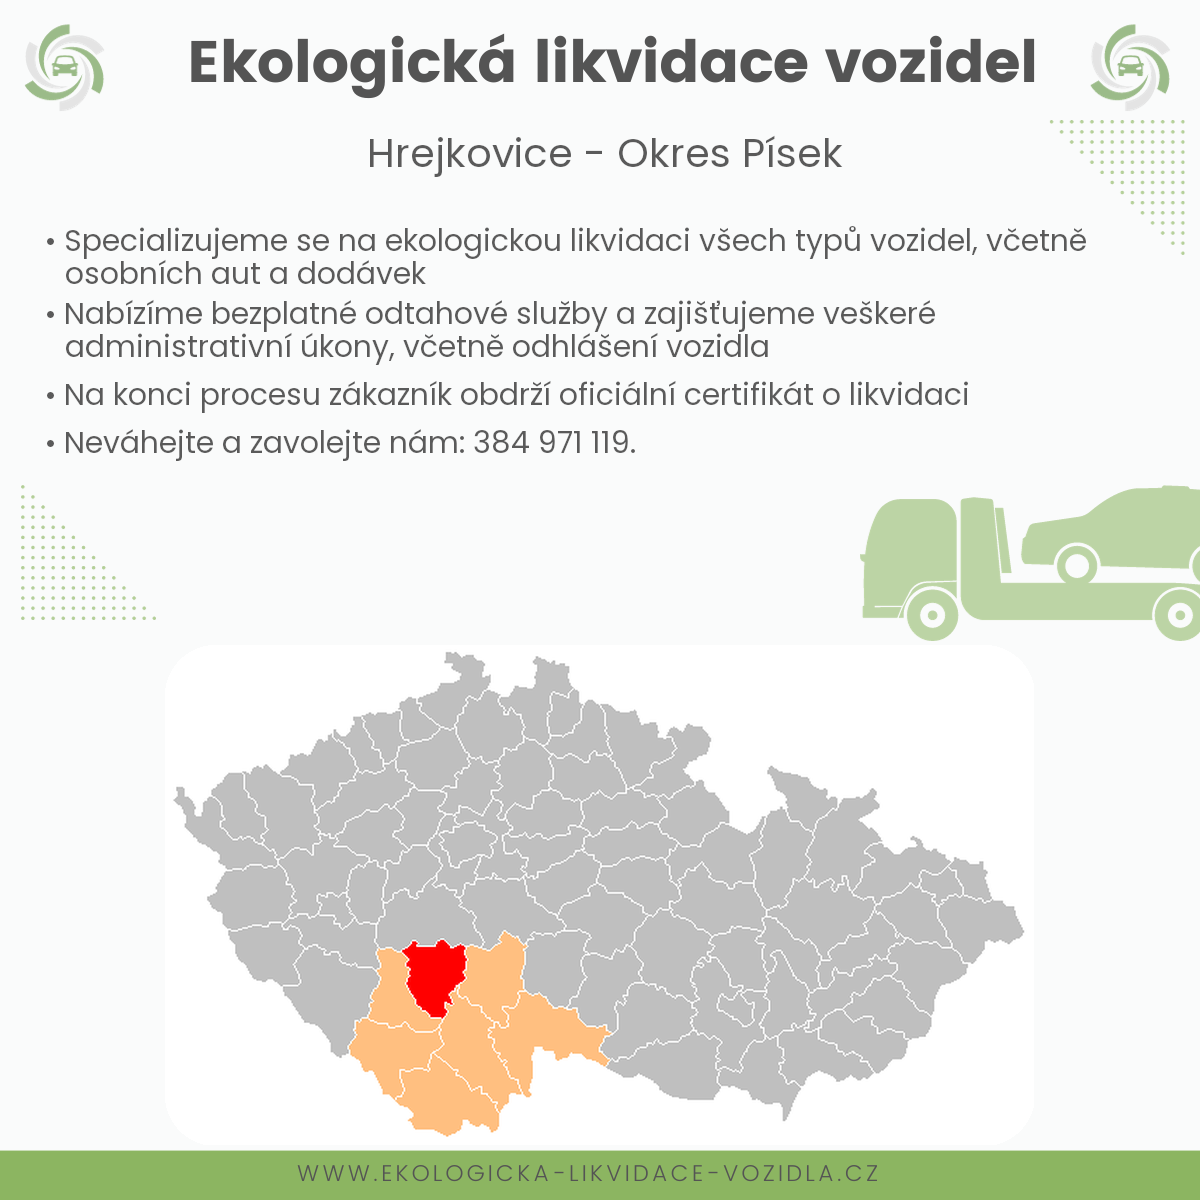 likvidace vozidel - Hrejkovice